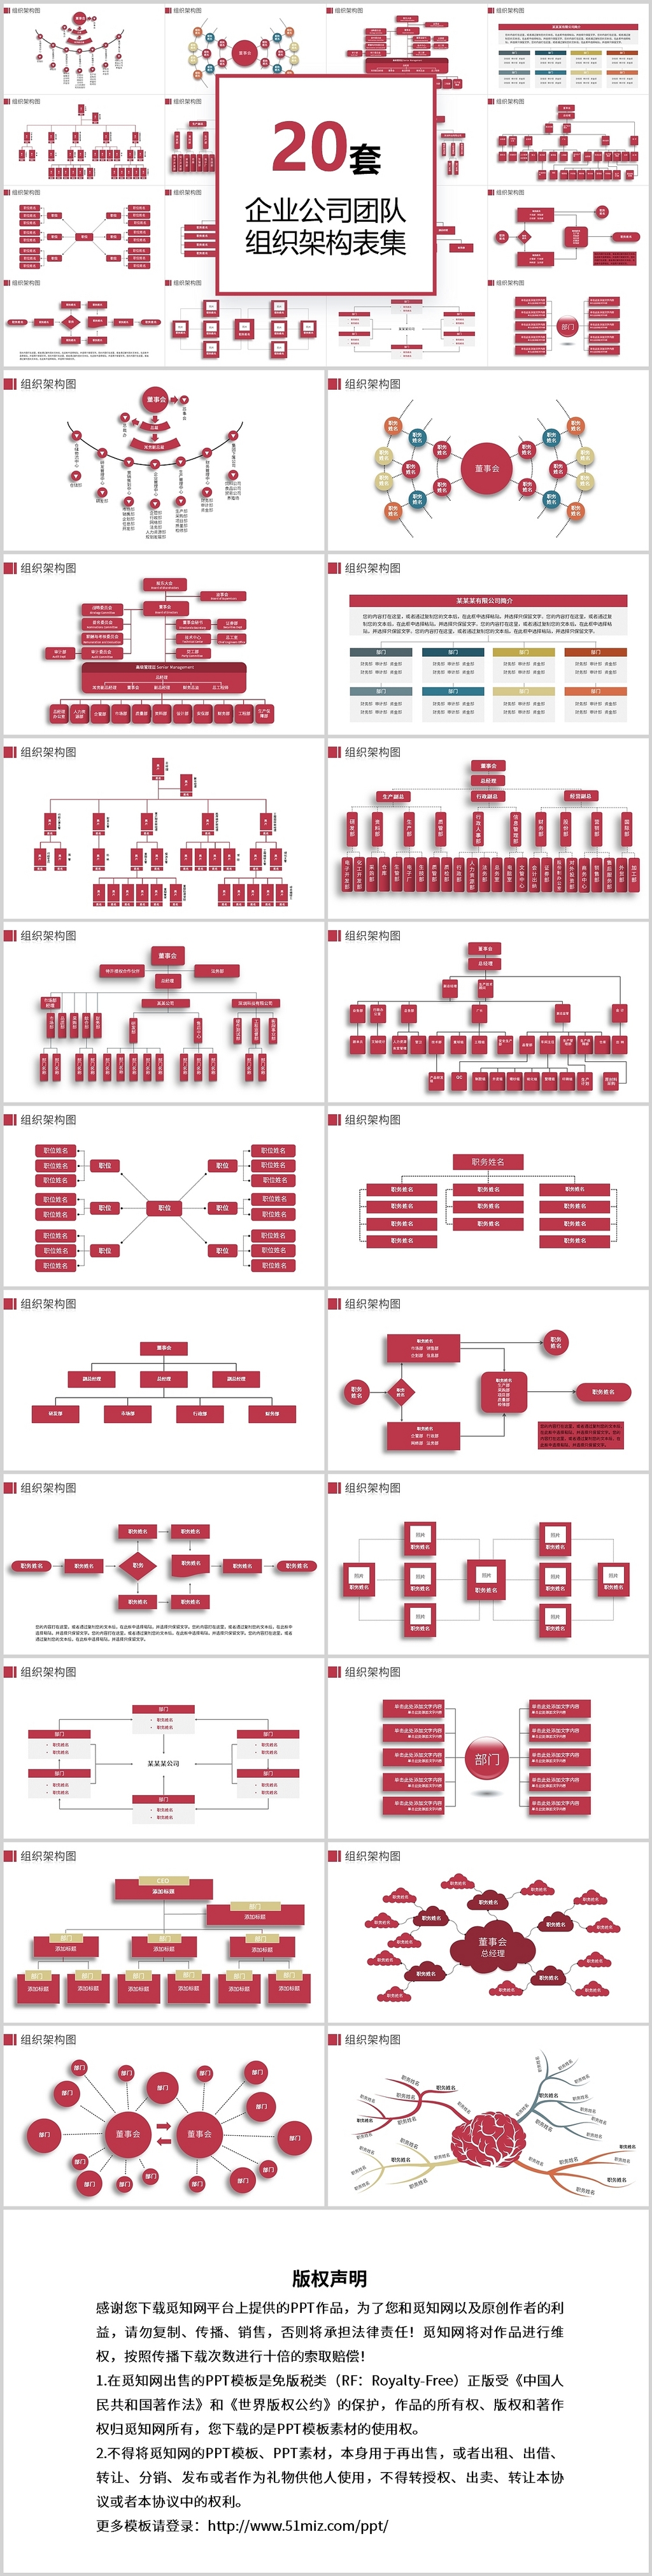 20页公司企业团体组织架构图PPT模板组织架构图表